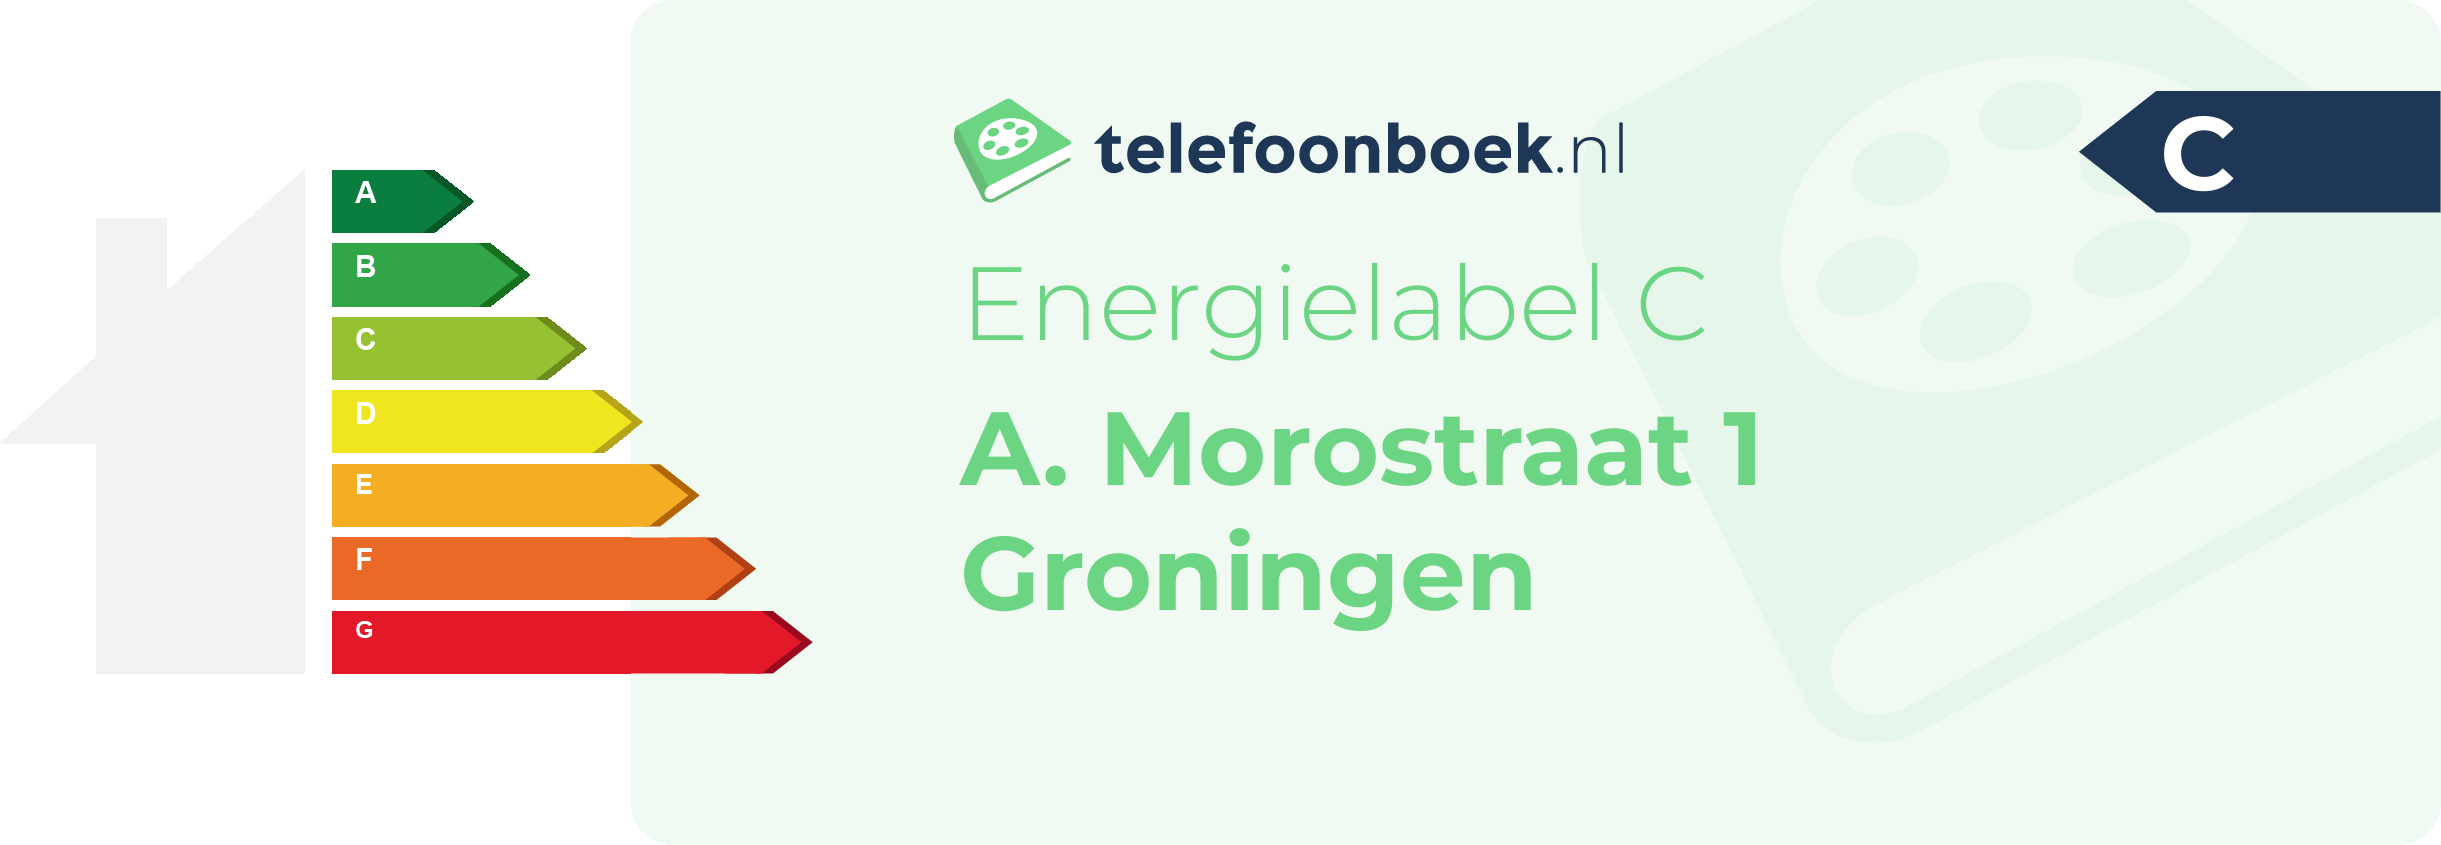 Energielabel A. Morostraat 1 Groningen